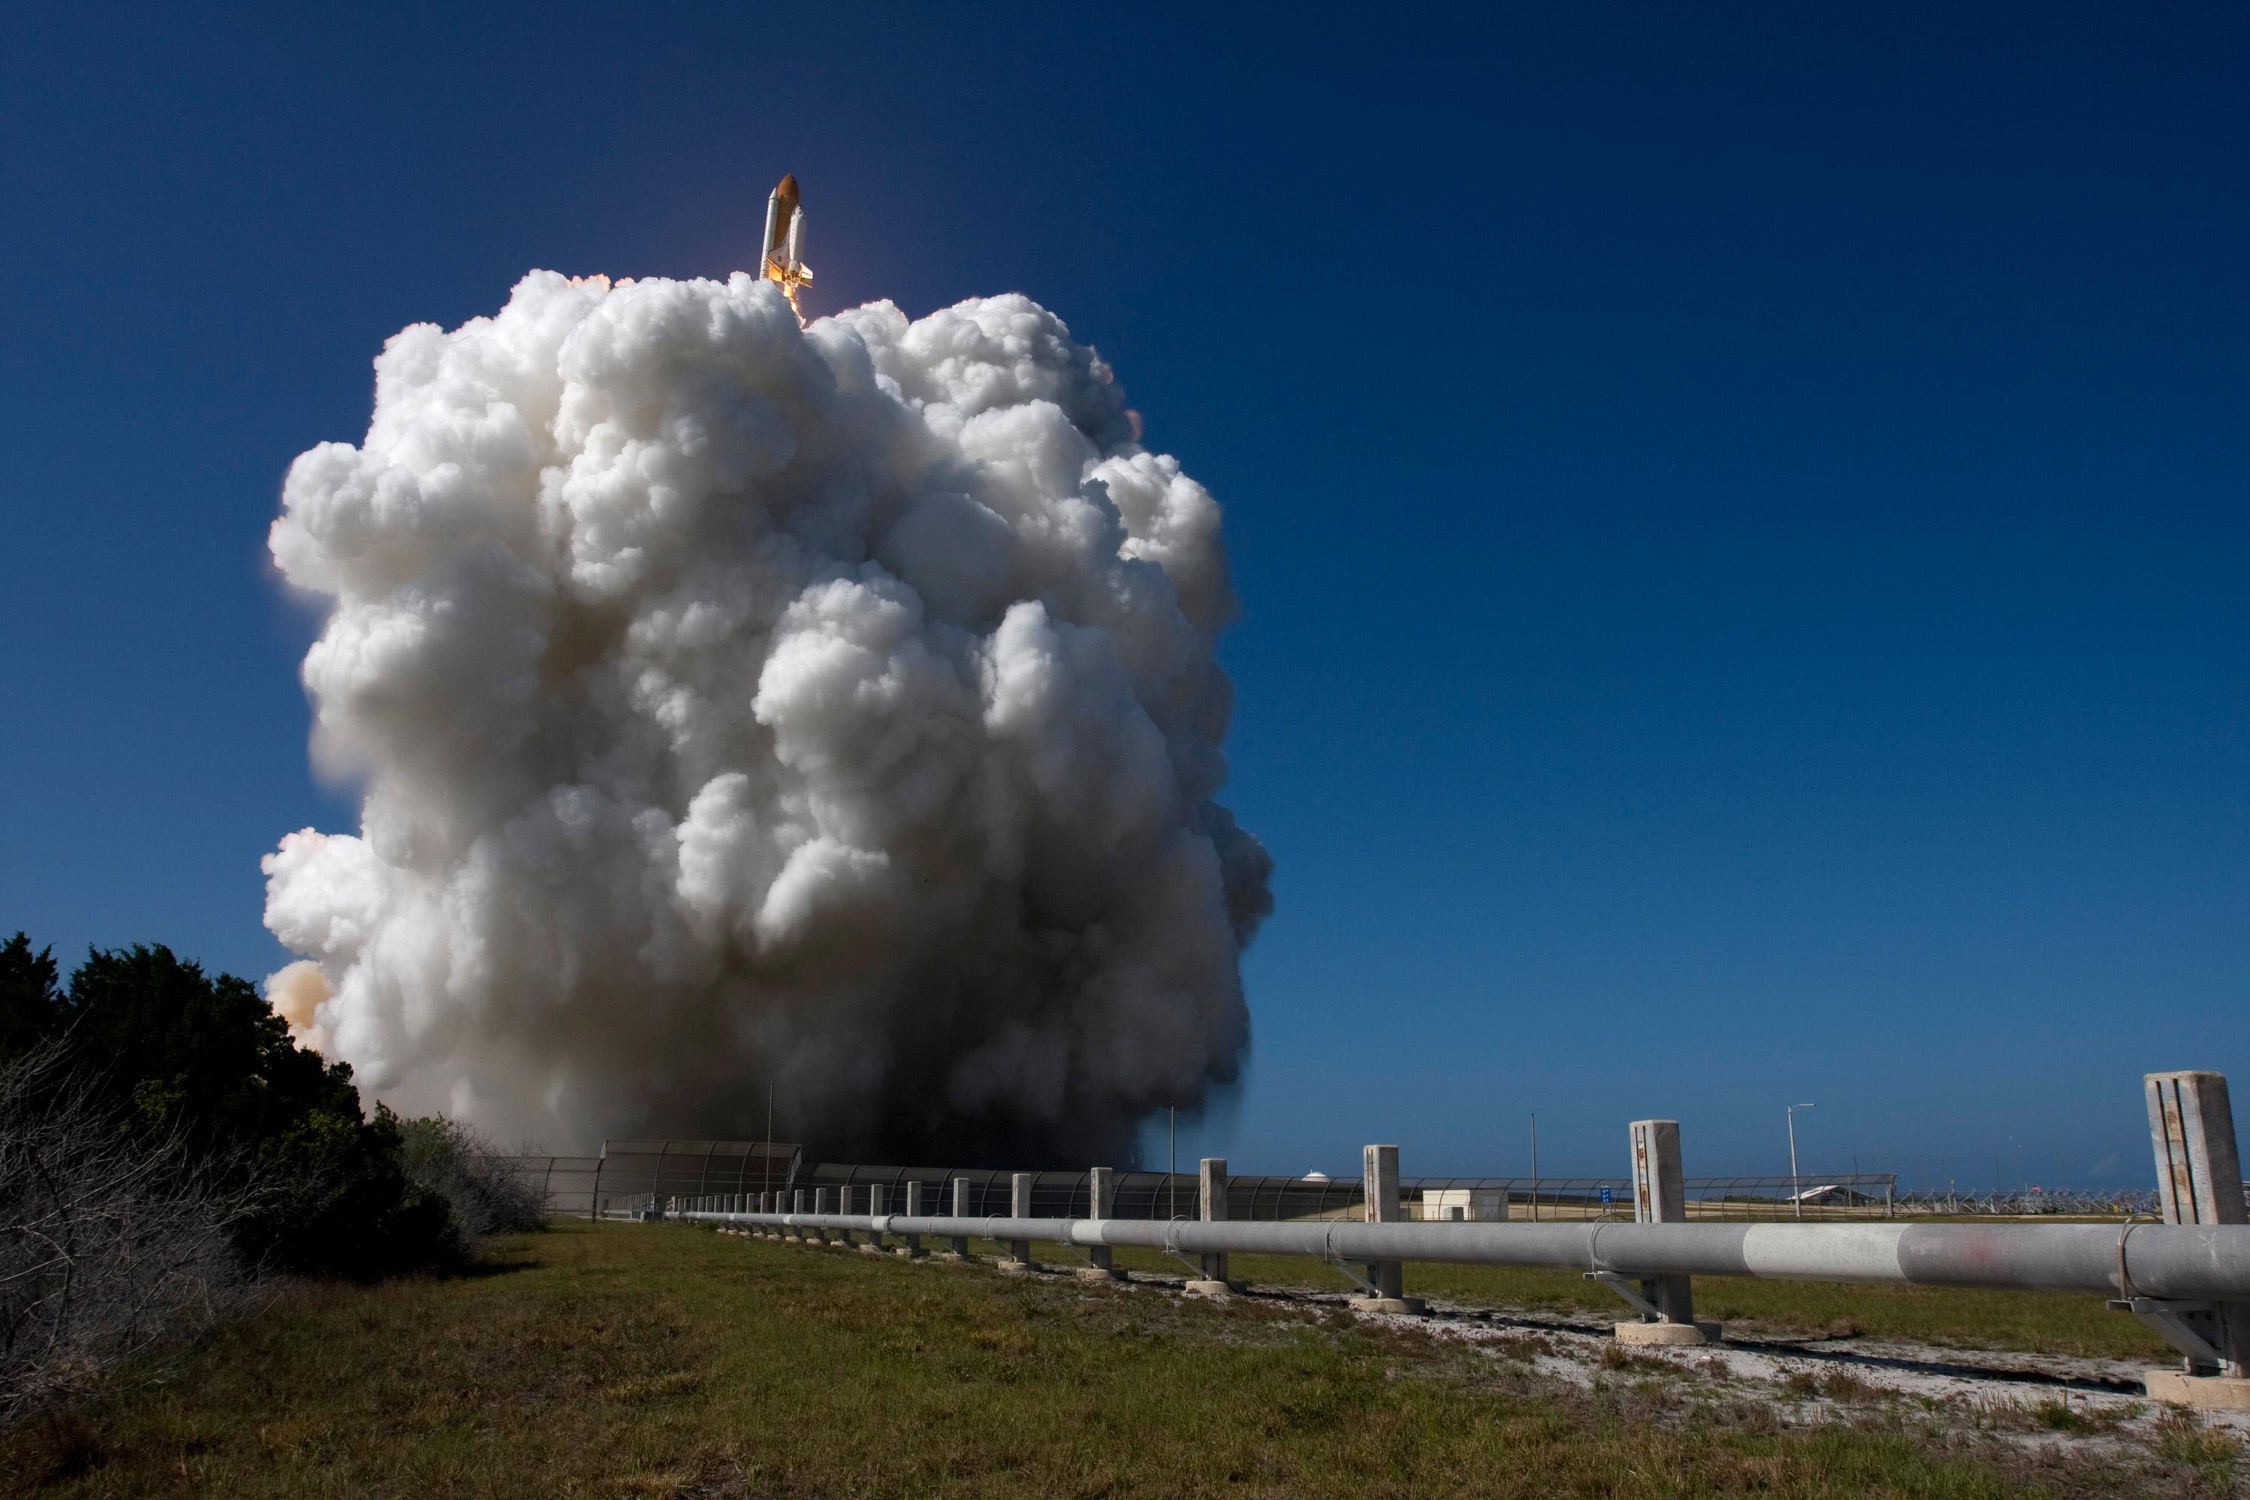 General 2250x1500 space shuttle launching smoke vehicle sky NASA